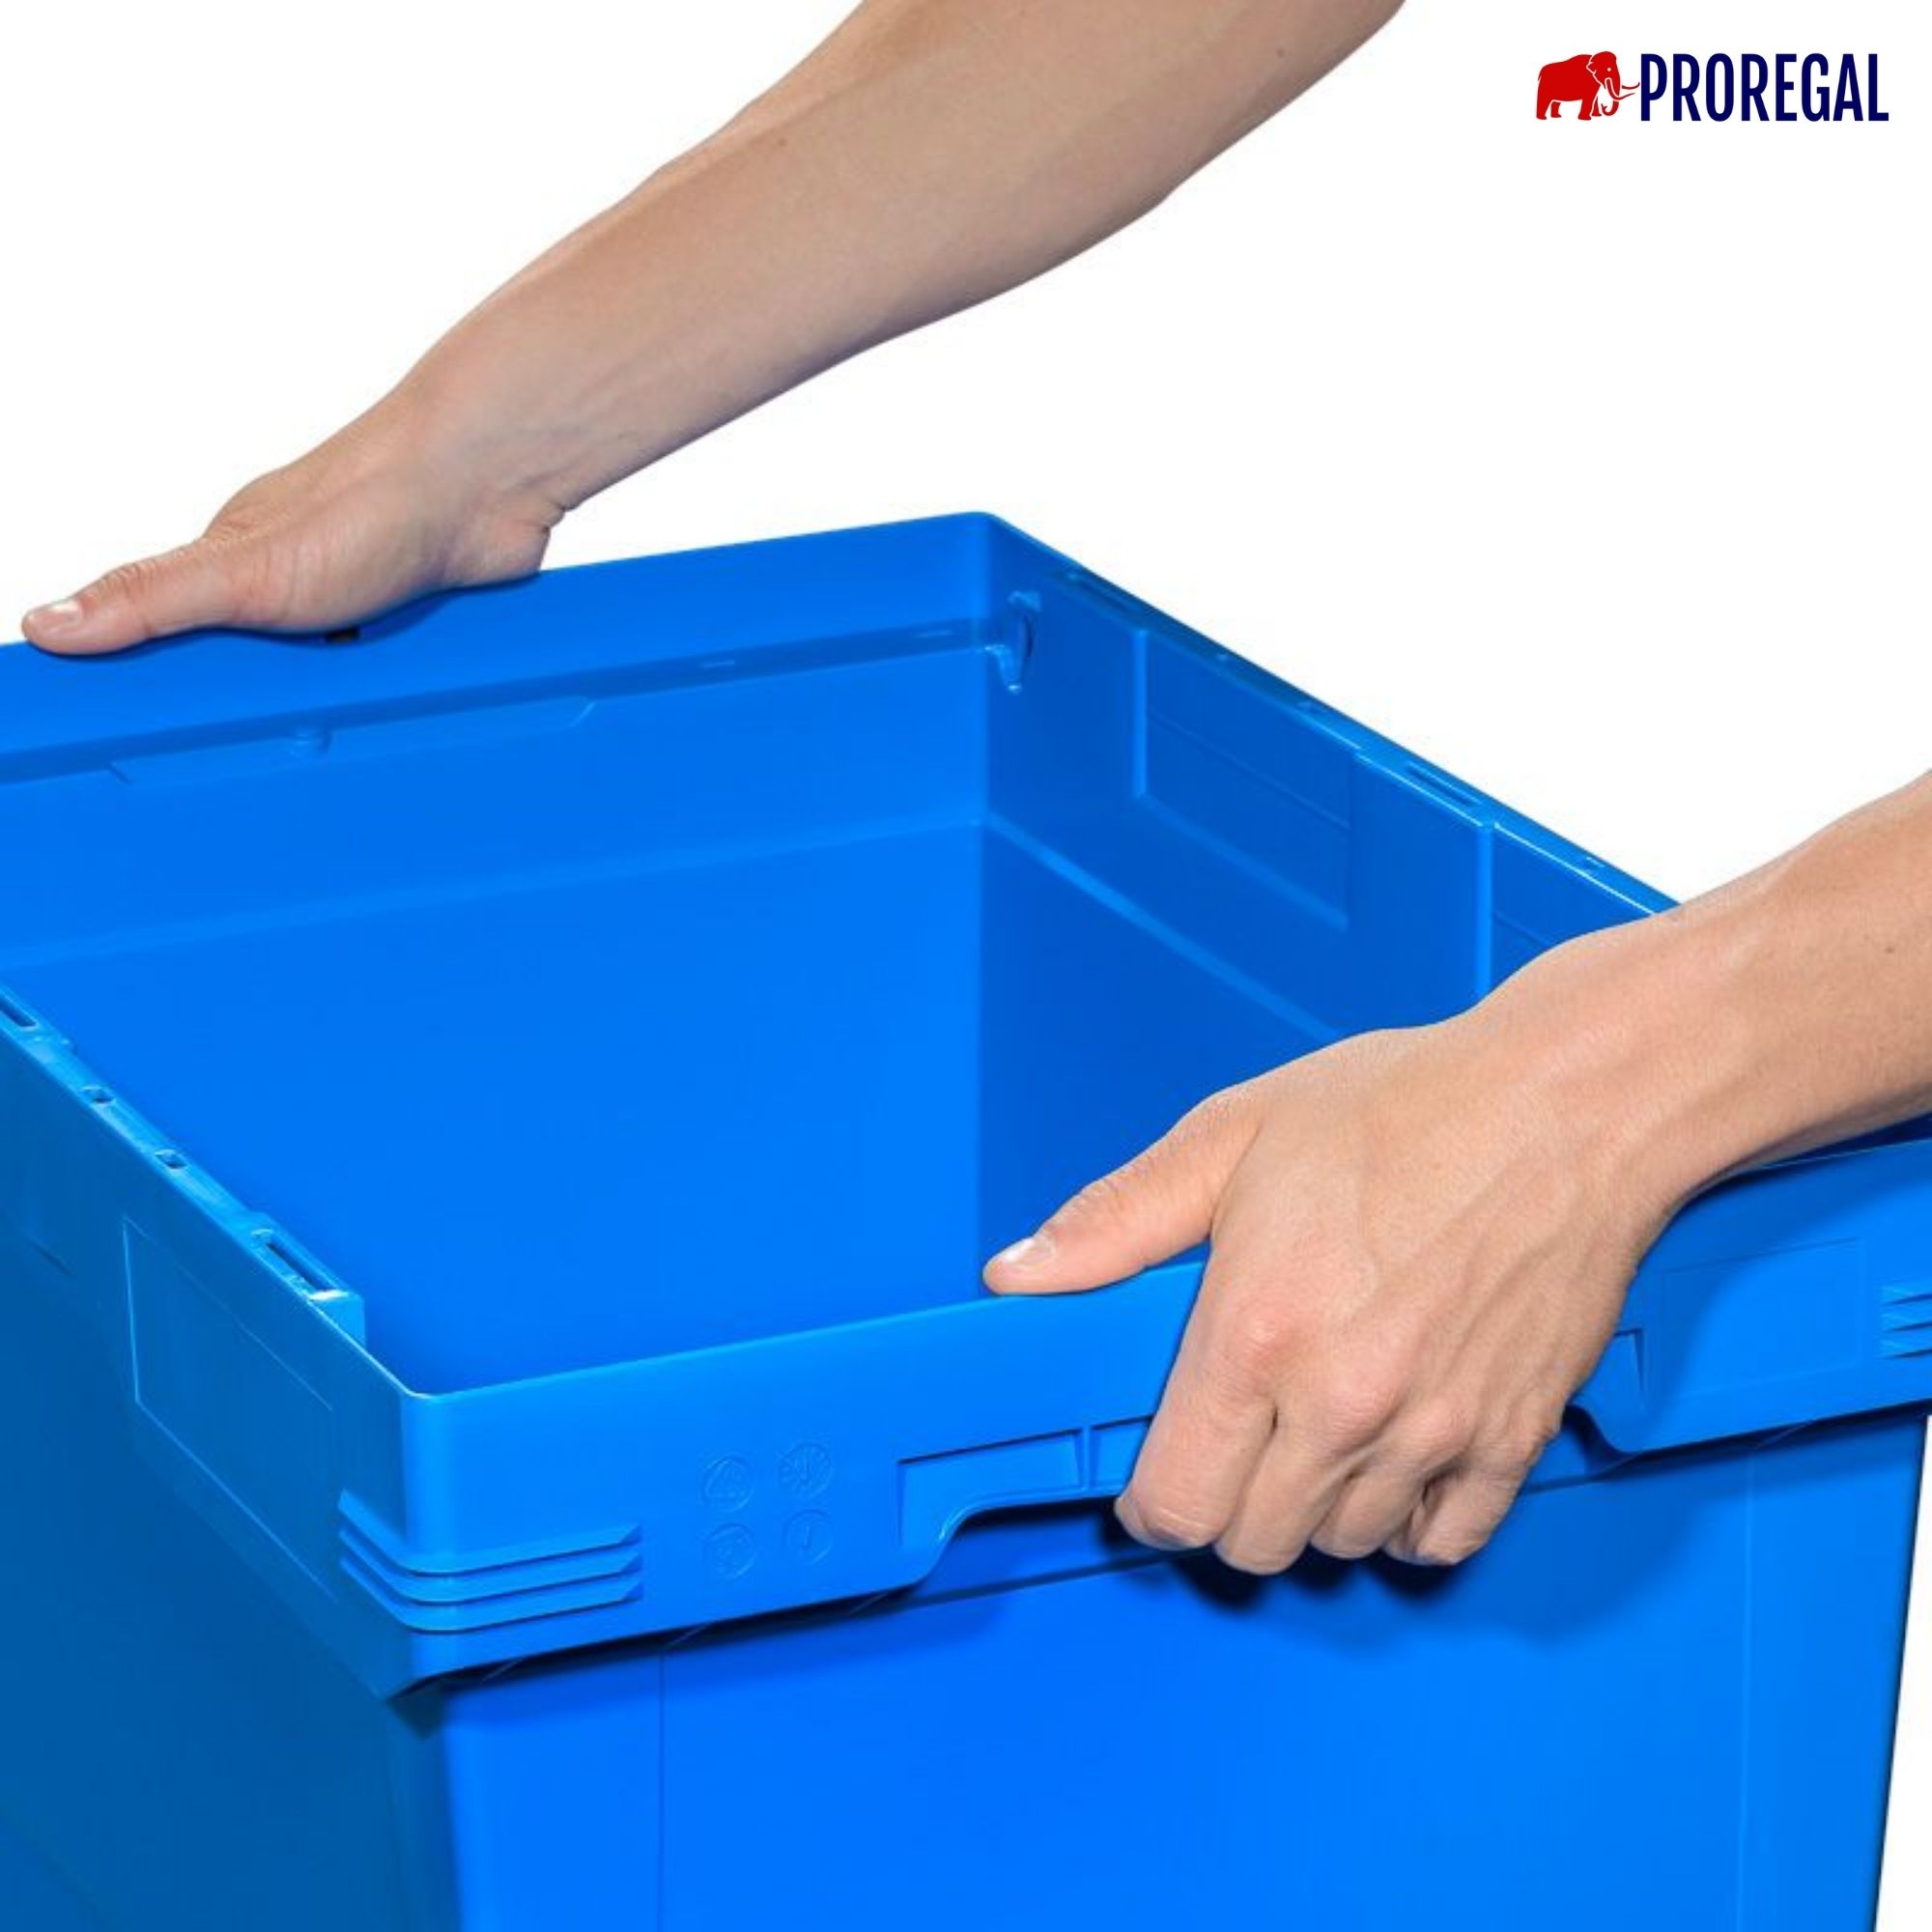 SparSet 10x Conical Mehrweg-Stapelbehälter mit Stapelbügel Blau | HxBxT 27,3x40x60cm | 47 Liter | Lagerbox Eurobox Transportbox Transportbehälter Stapelbehälter